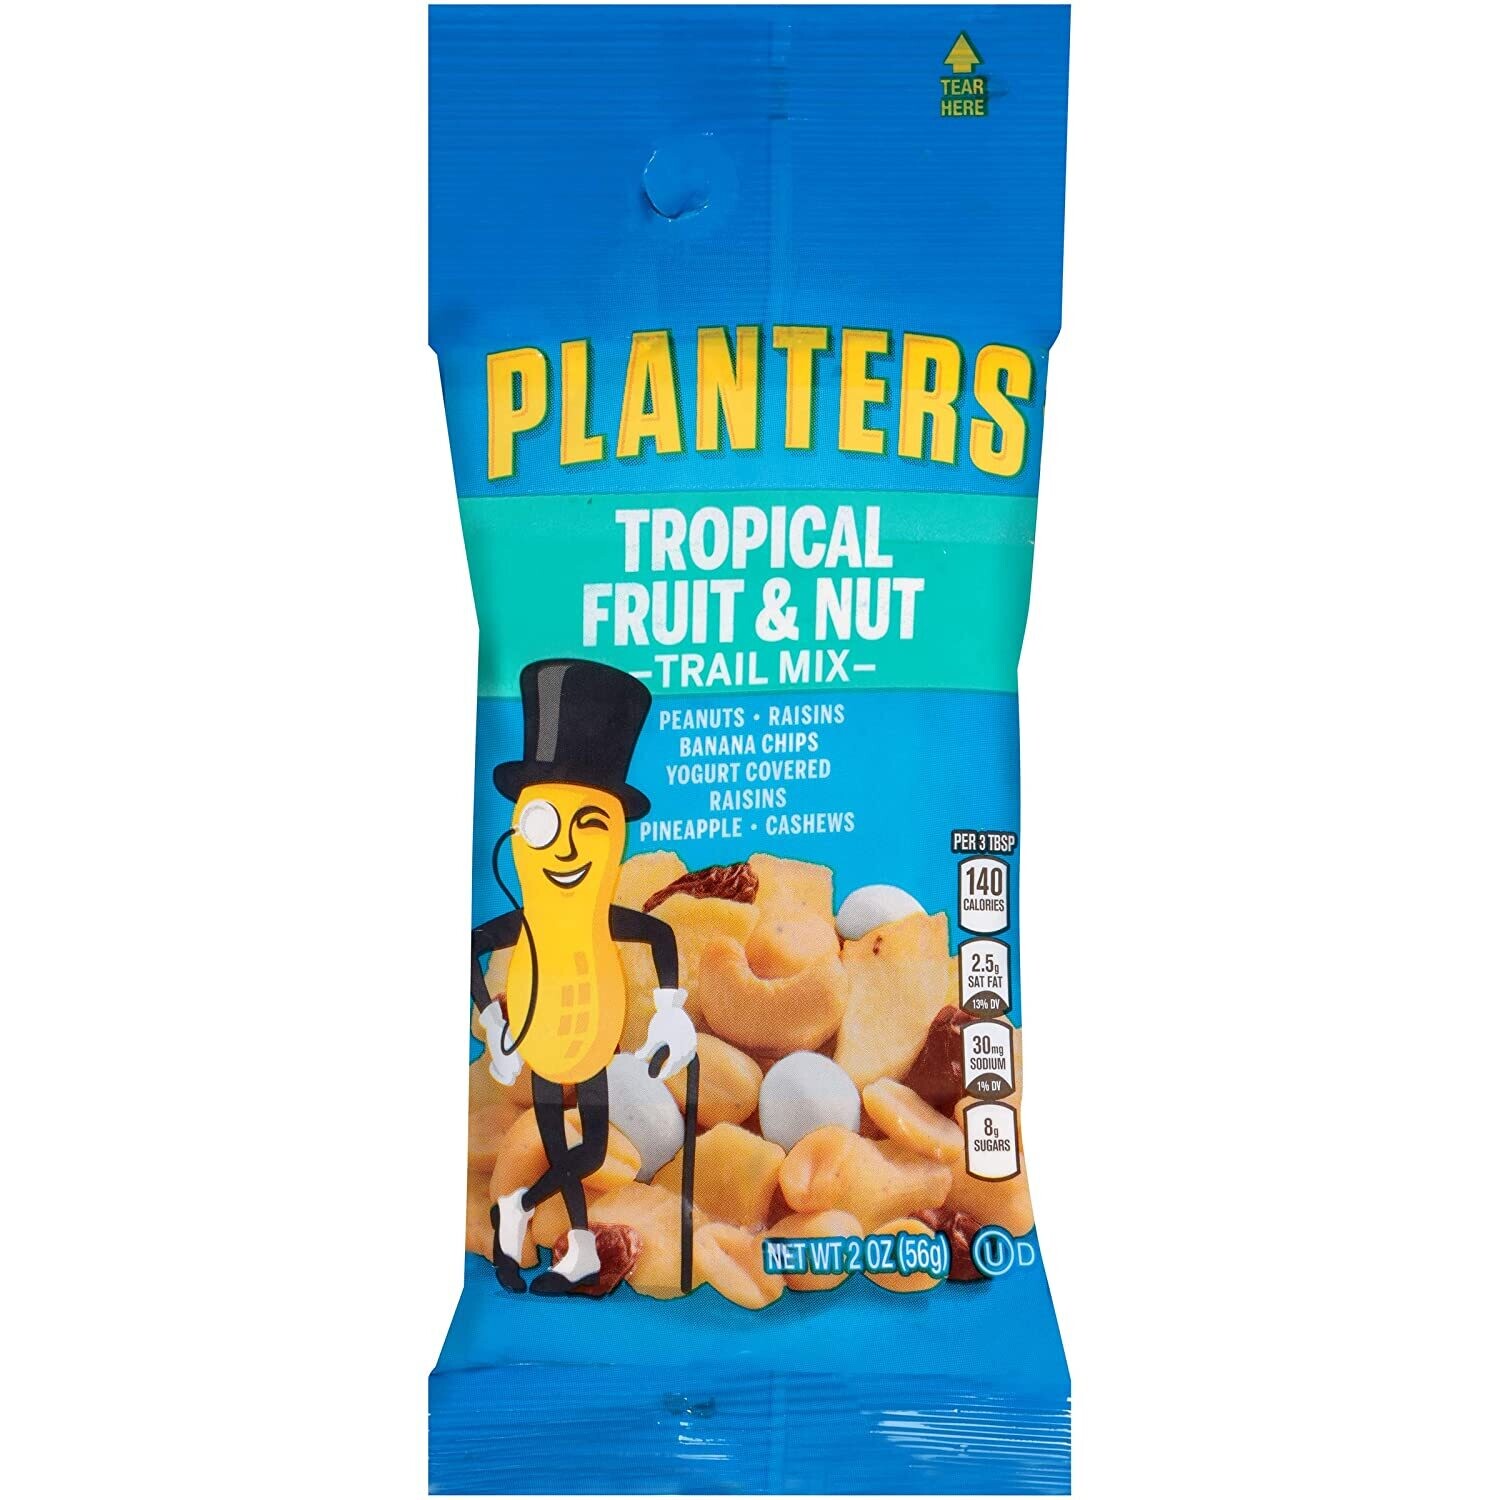 Planters: Trop Fruit & Nuts Mix 2oz.